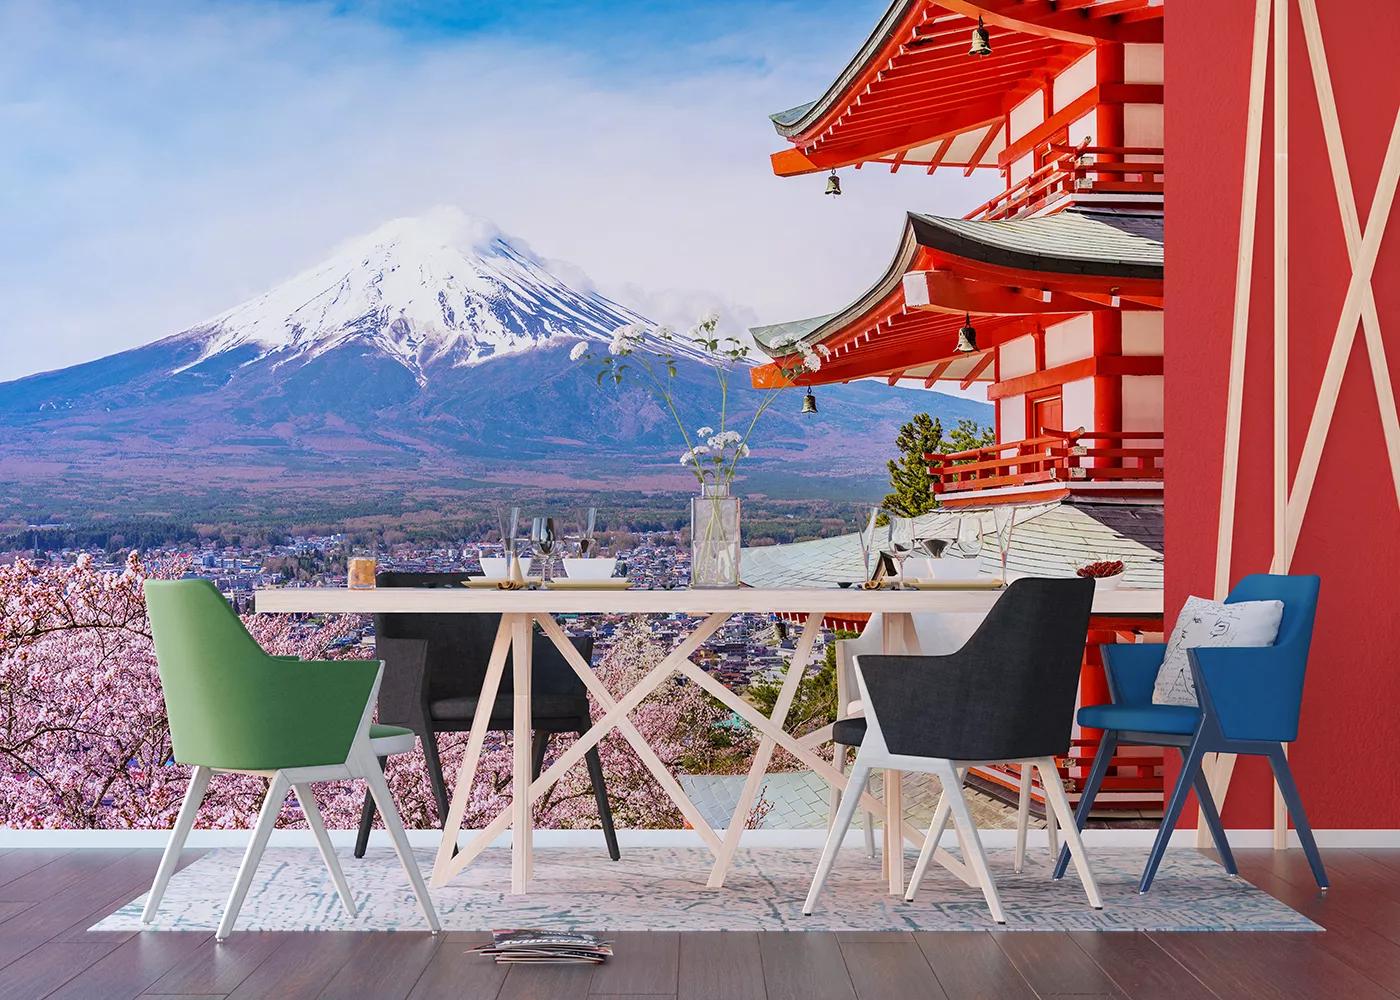 Fali poszter Japánban, látkép a Fuji hegyre